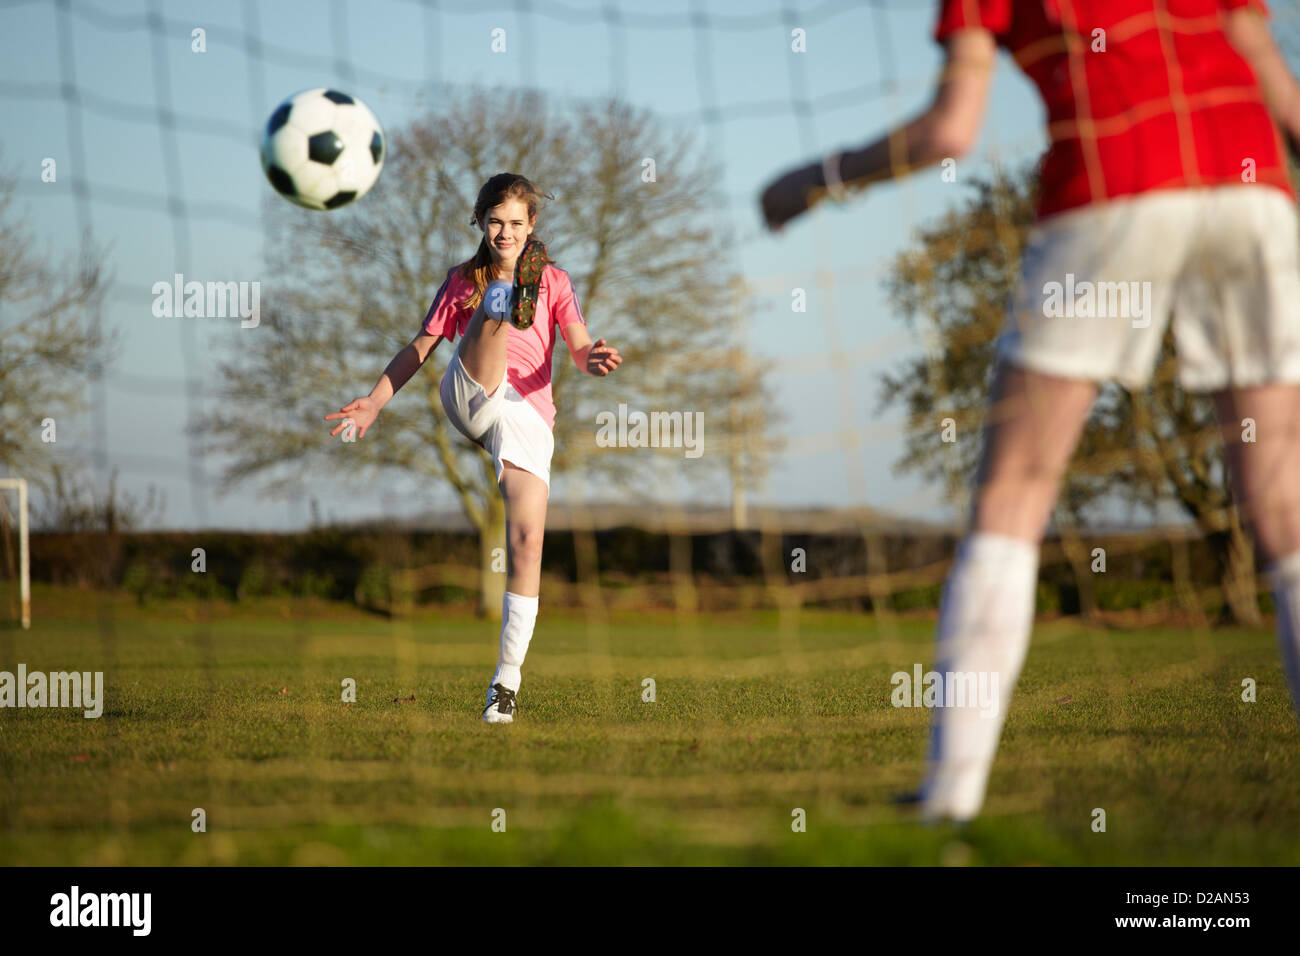 Girl Kicking Football Ball Into Goal Stock Photo Alamy